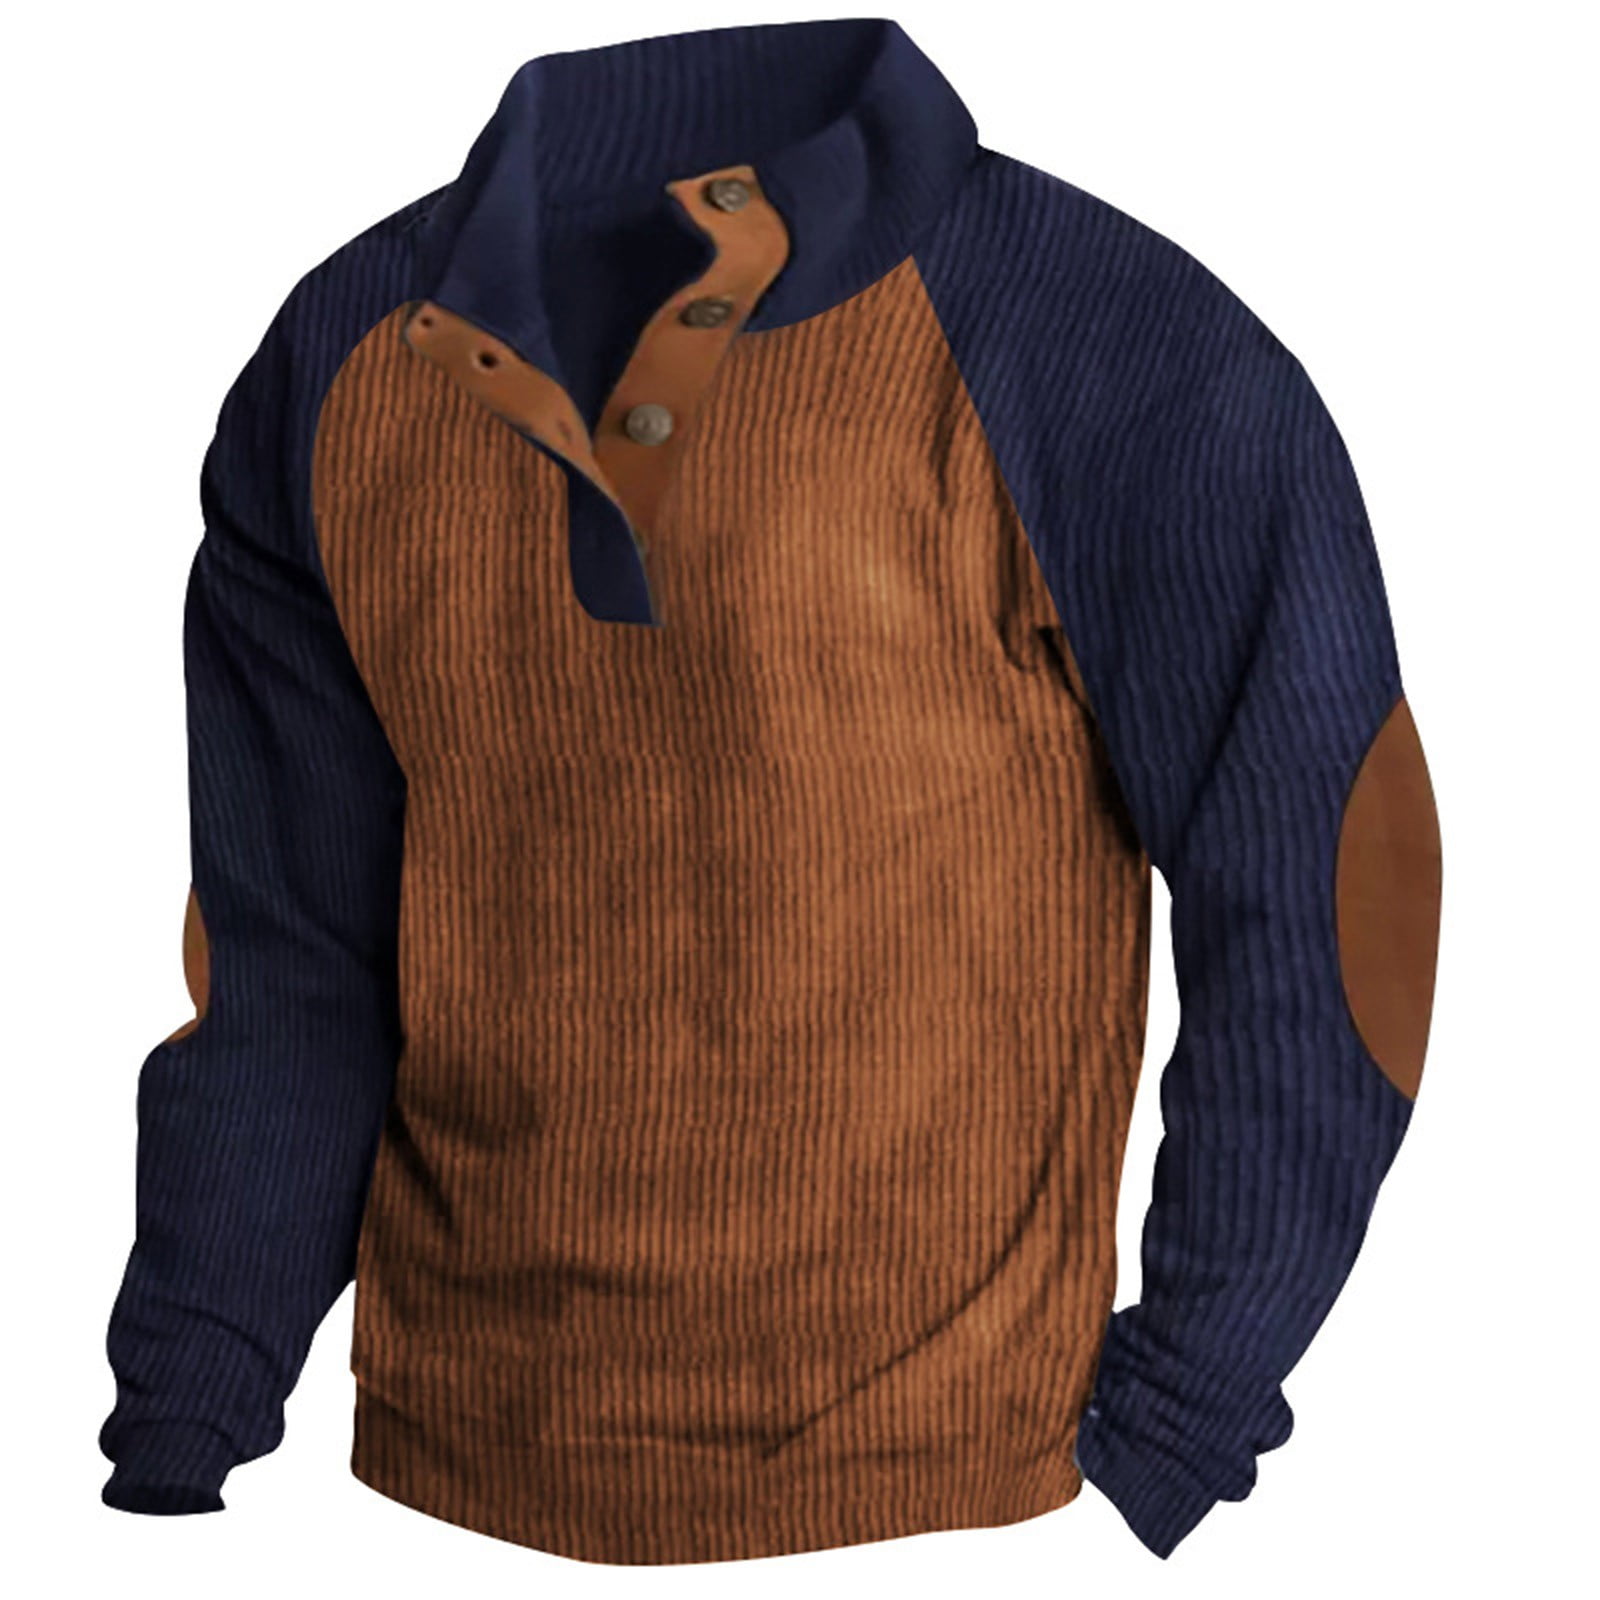 Mlqidk Corduroy Tactical Sweatshirts for Men Long Sleeve Button ...